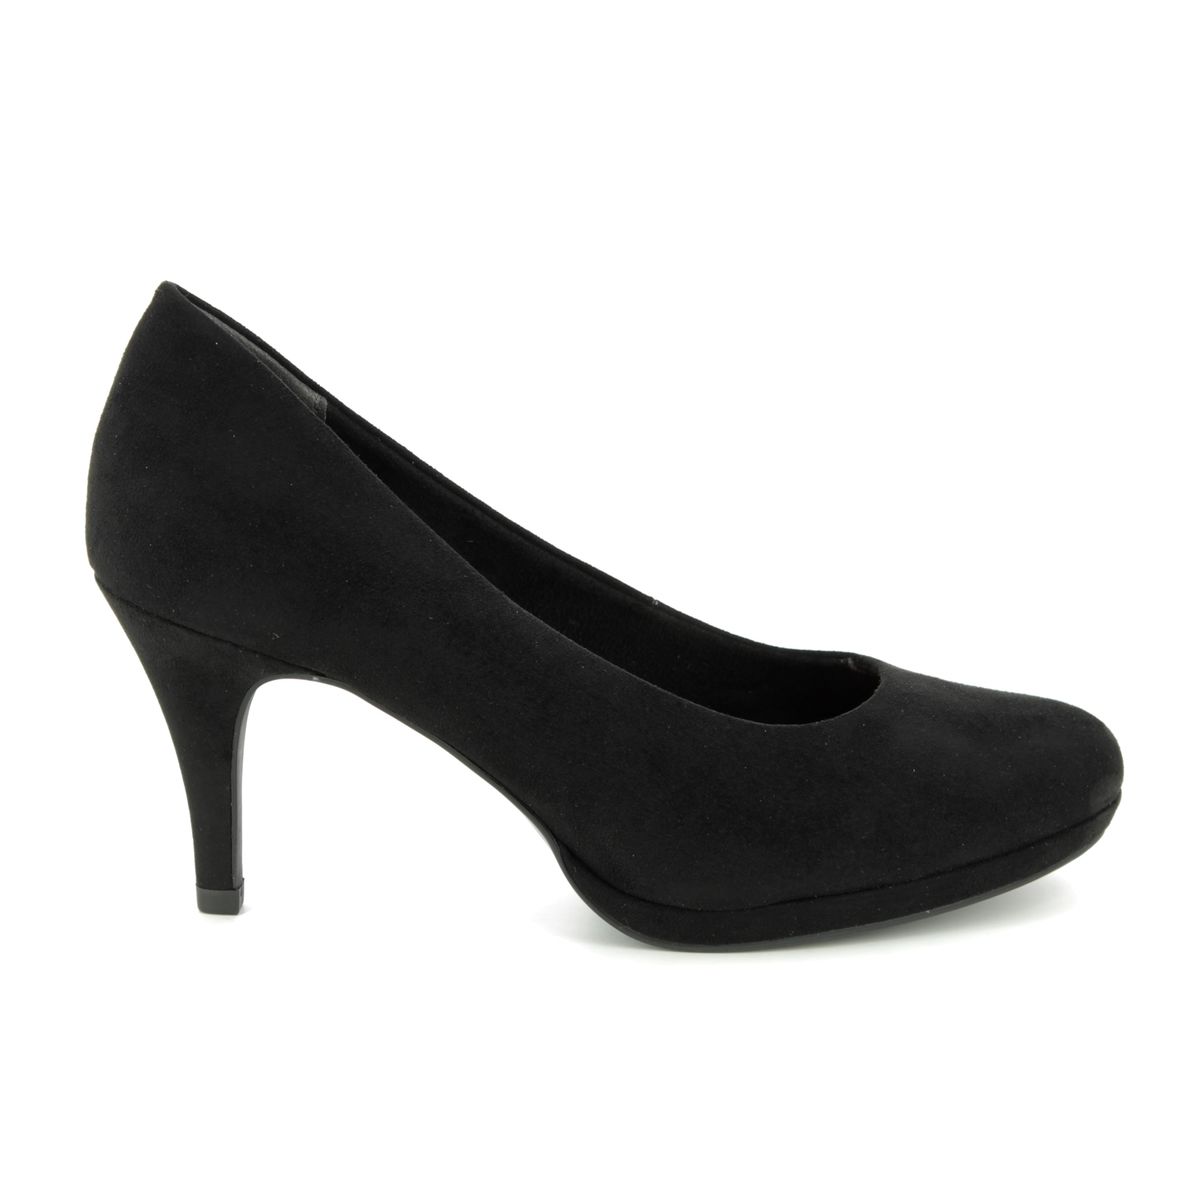 Jessa 22464-32-001 Black high-heeled shoes